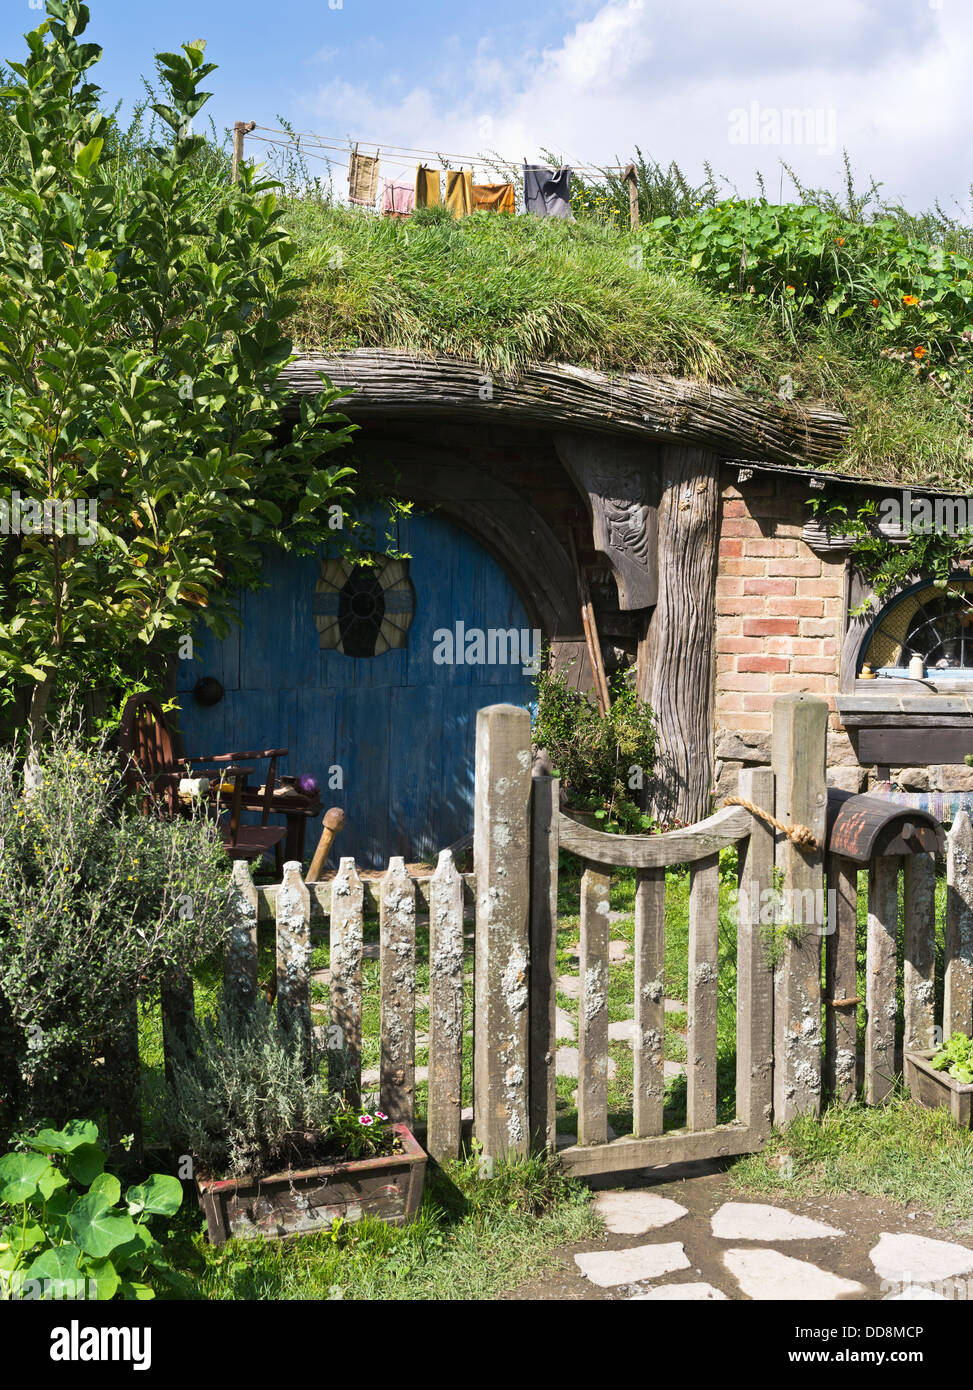 dh Herr der Ringe HOBBINGEN Neuseeland Hobbits Hütte Tür Film set Filmseite Lord Rings Filme Hobbit Haus Stockfoto